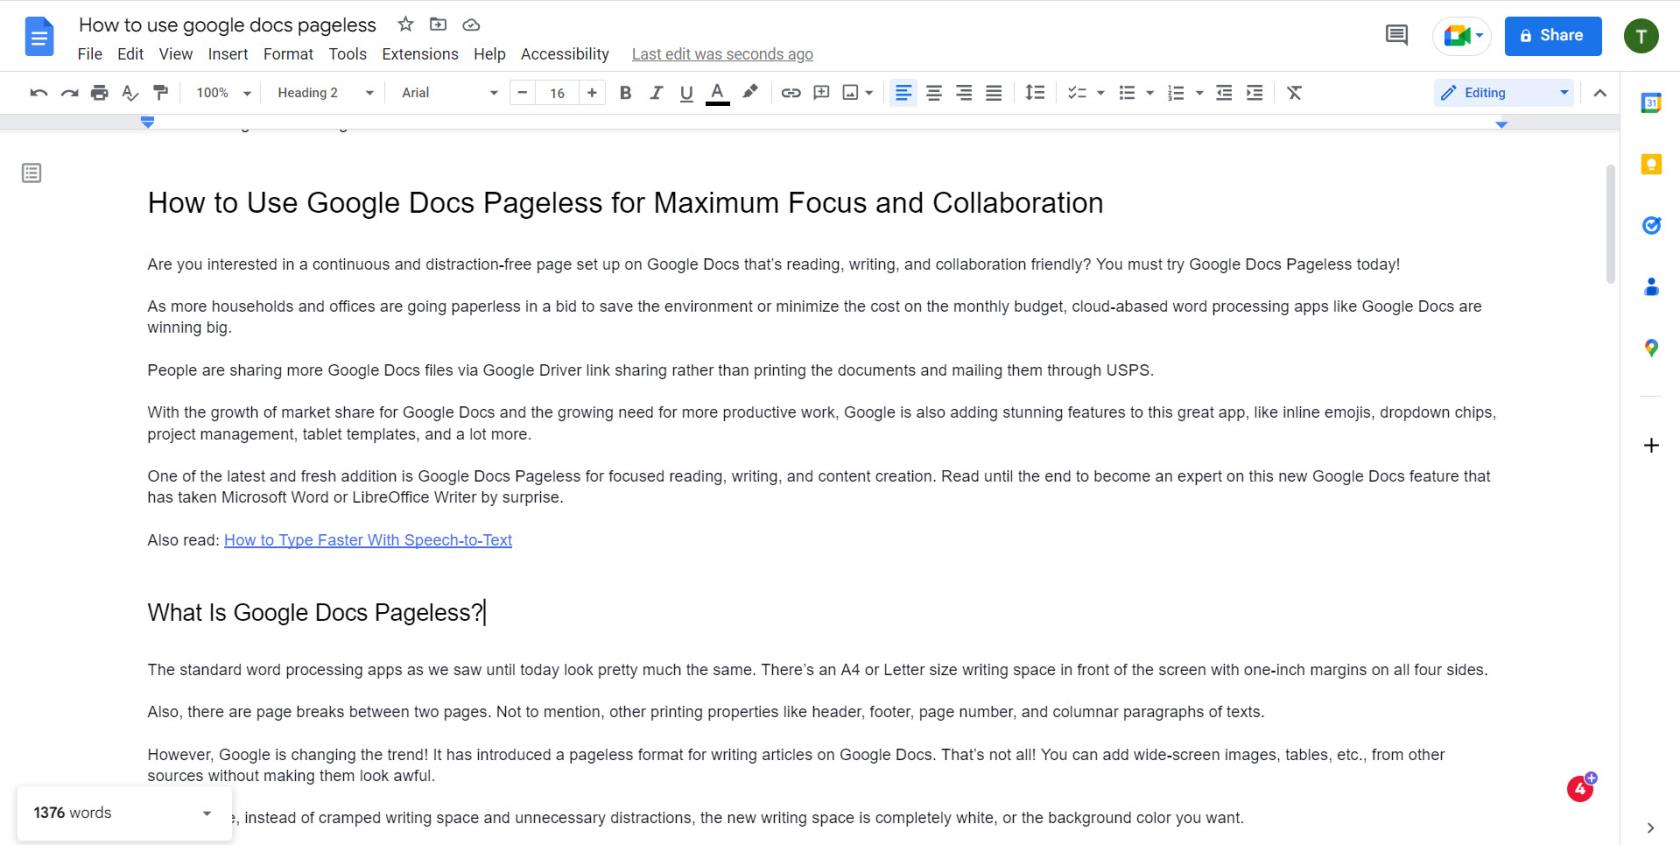 كيفية استخدام محرر مستندات Google Pageless لتحقيق أقصى قدر من التركيز والتعاون